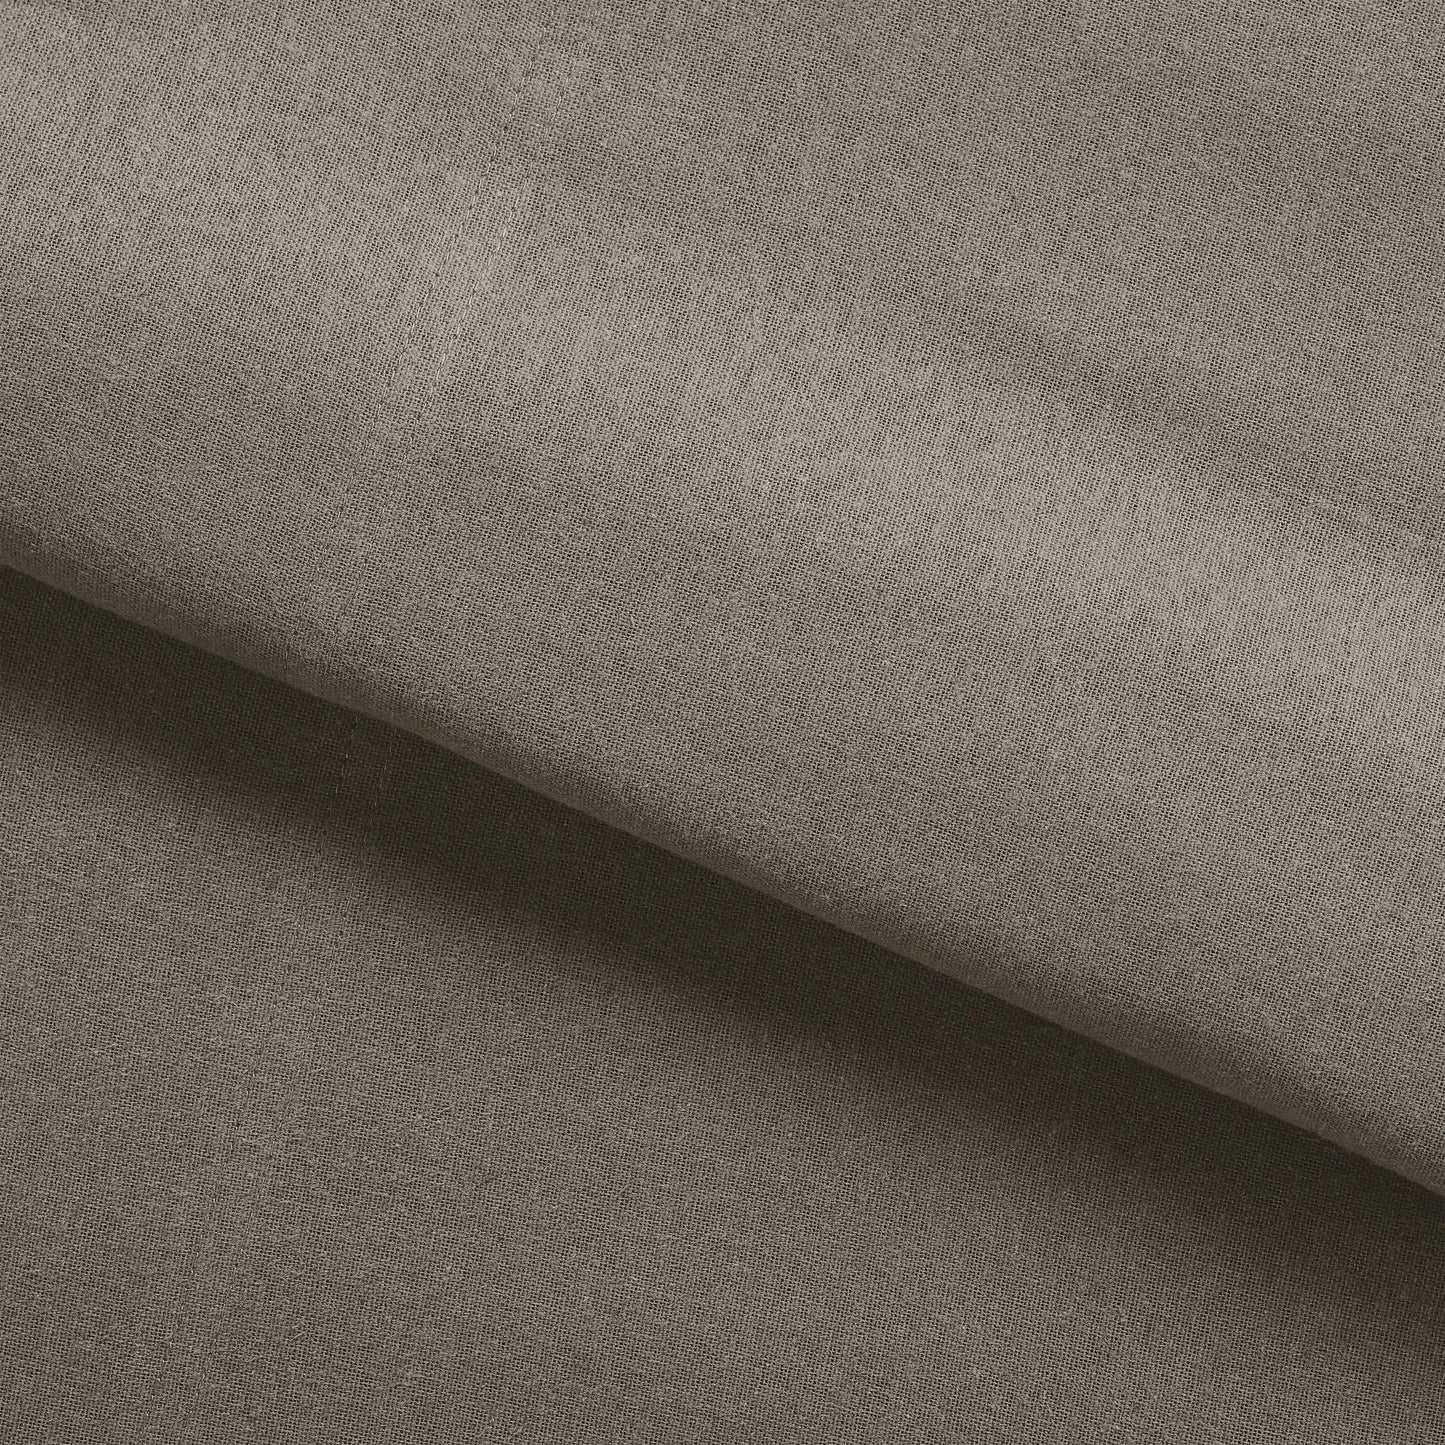 Premium Solid Fleur-de-Lis Cotton Flannel Pillowcase Set by Superior FredCo